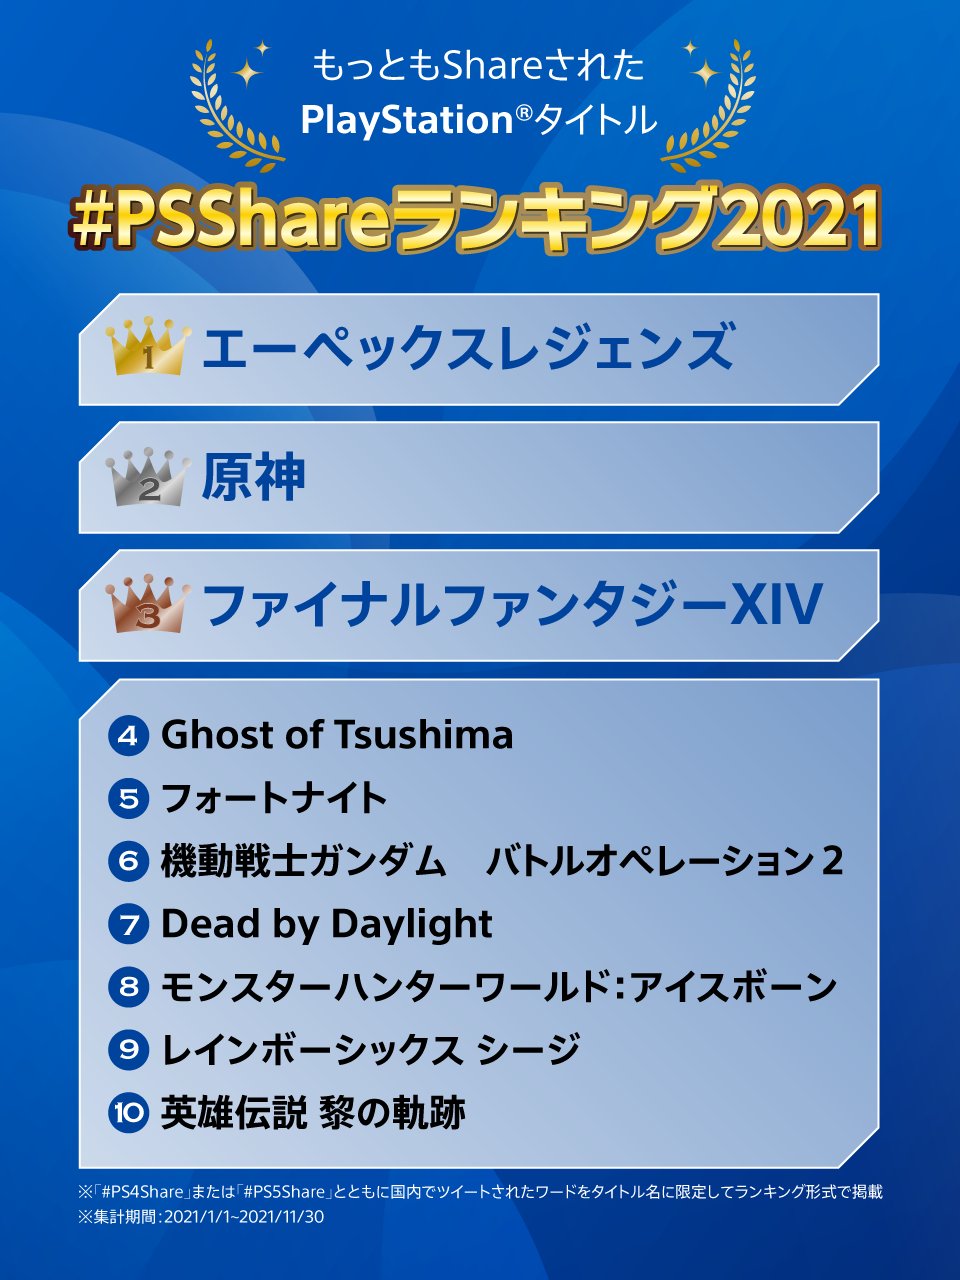 2021 PS Share日本国内十大游戏 《Apex英雄》登顶